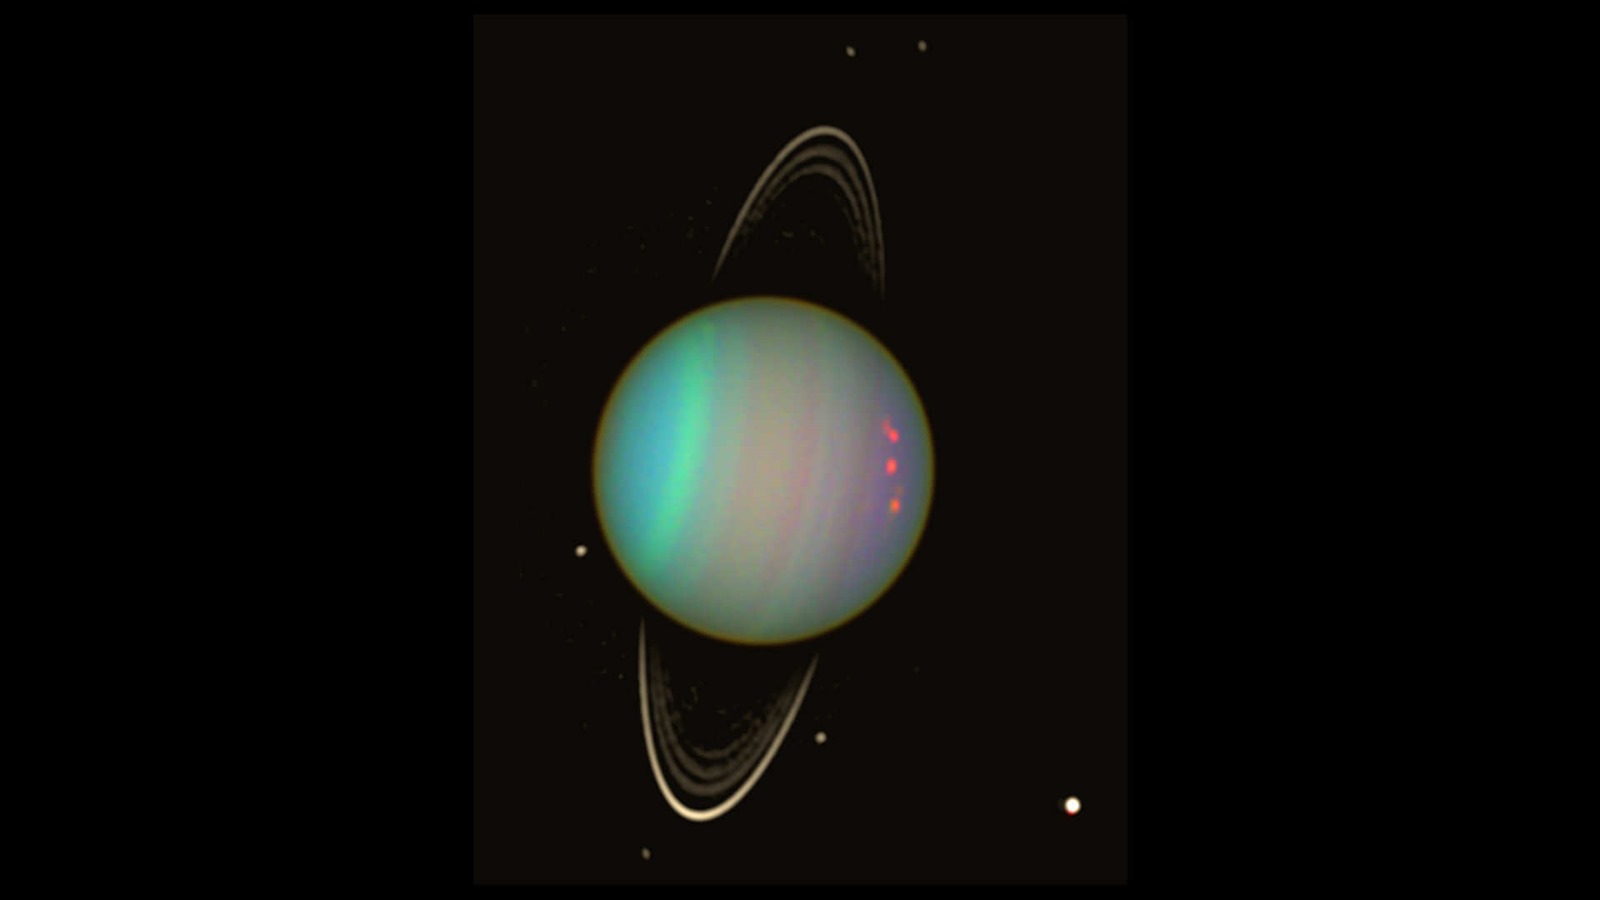 Des sillages dans les anneaux d’Uranus révèlent la présence de deux nouvelles lunes